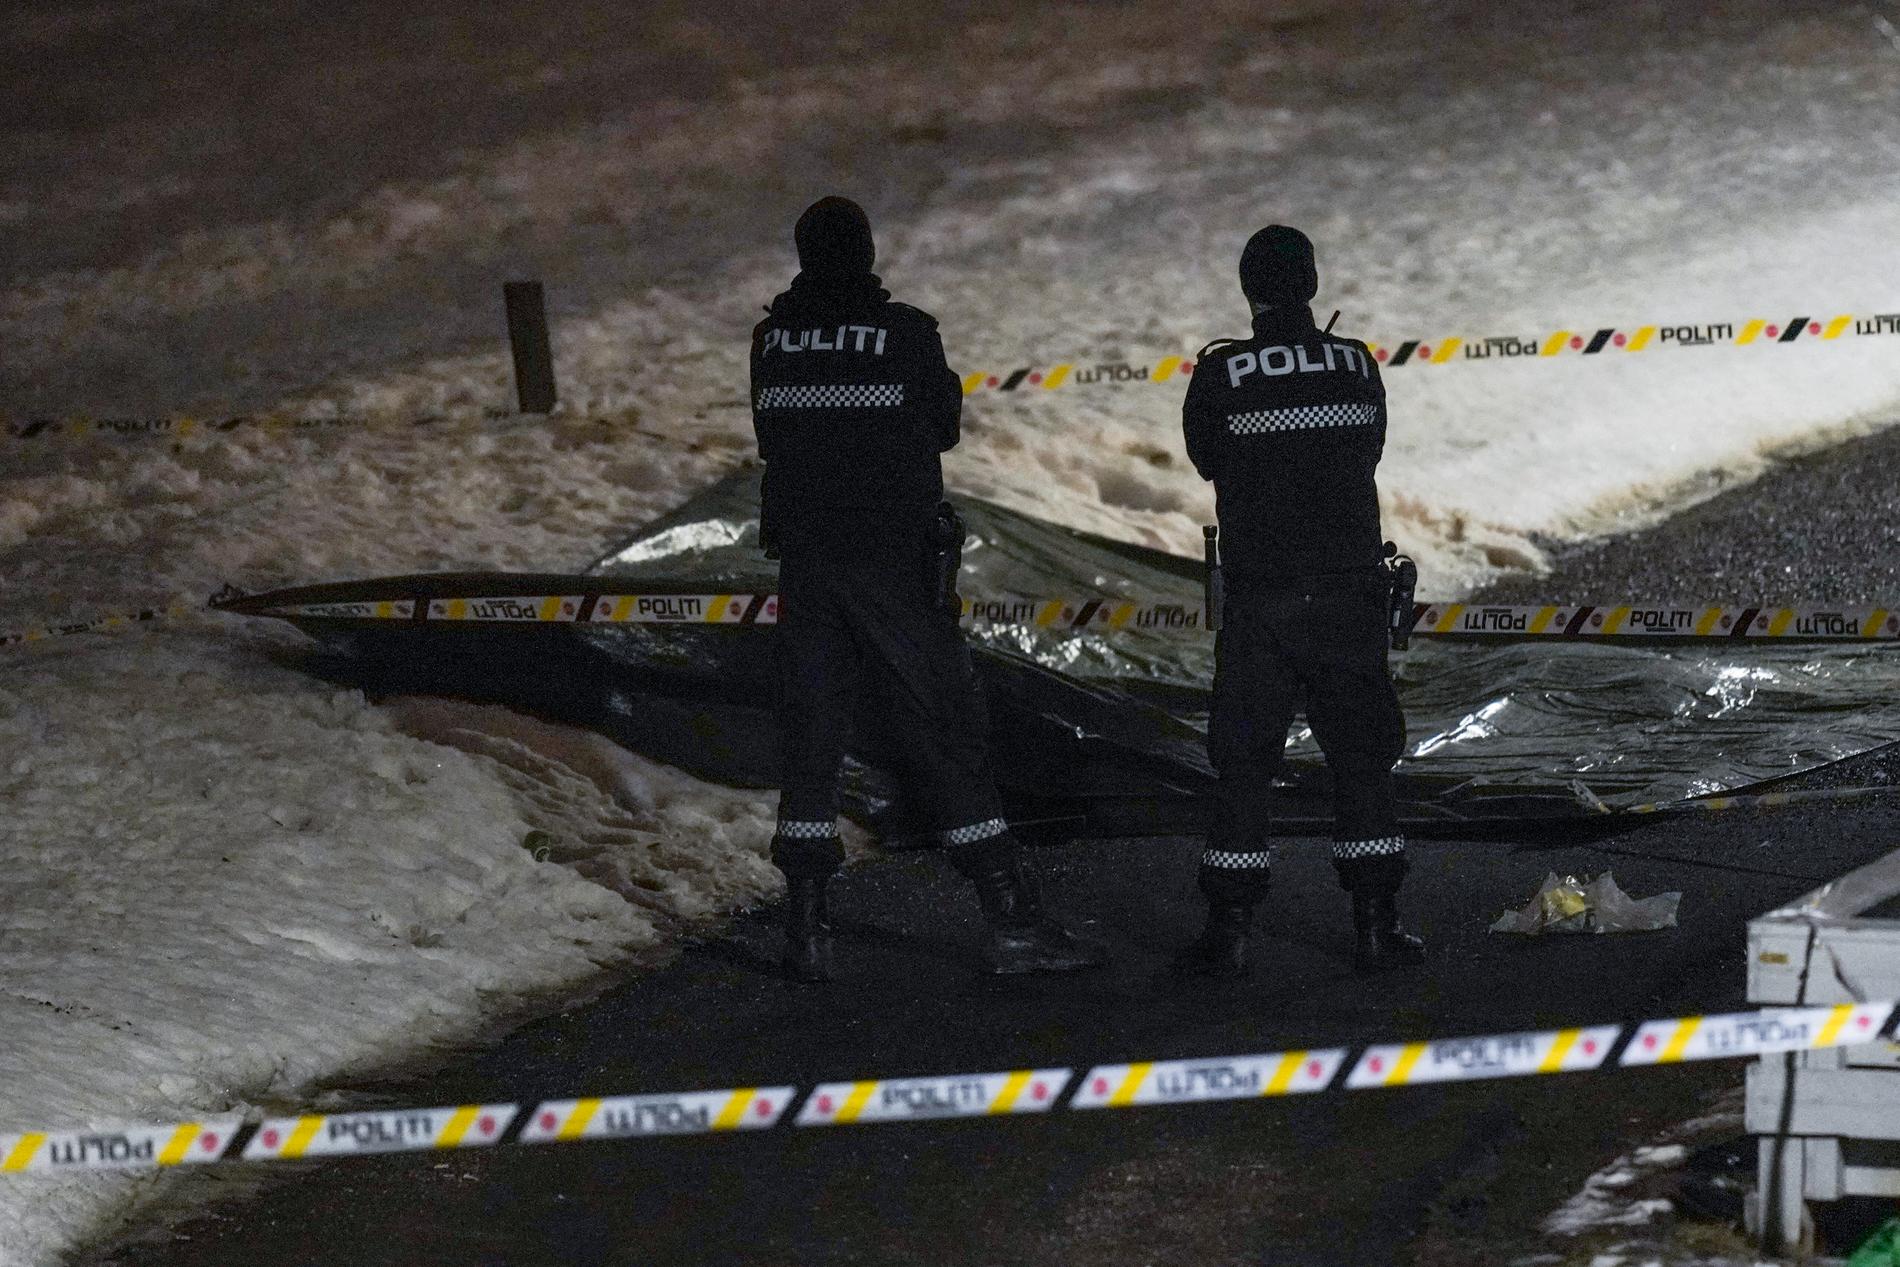 Norsk polis har skjutit en yxbeväpnad man nordost om Oslo.